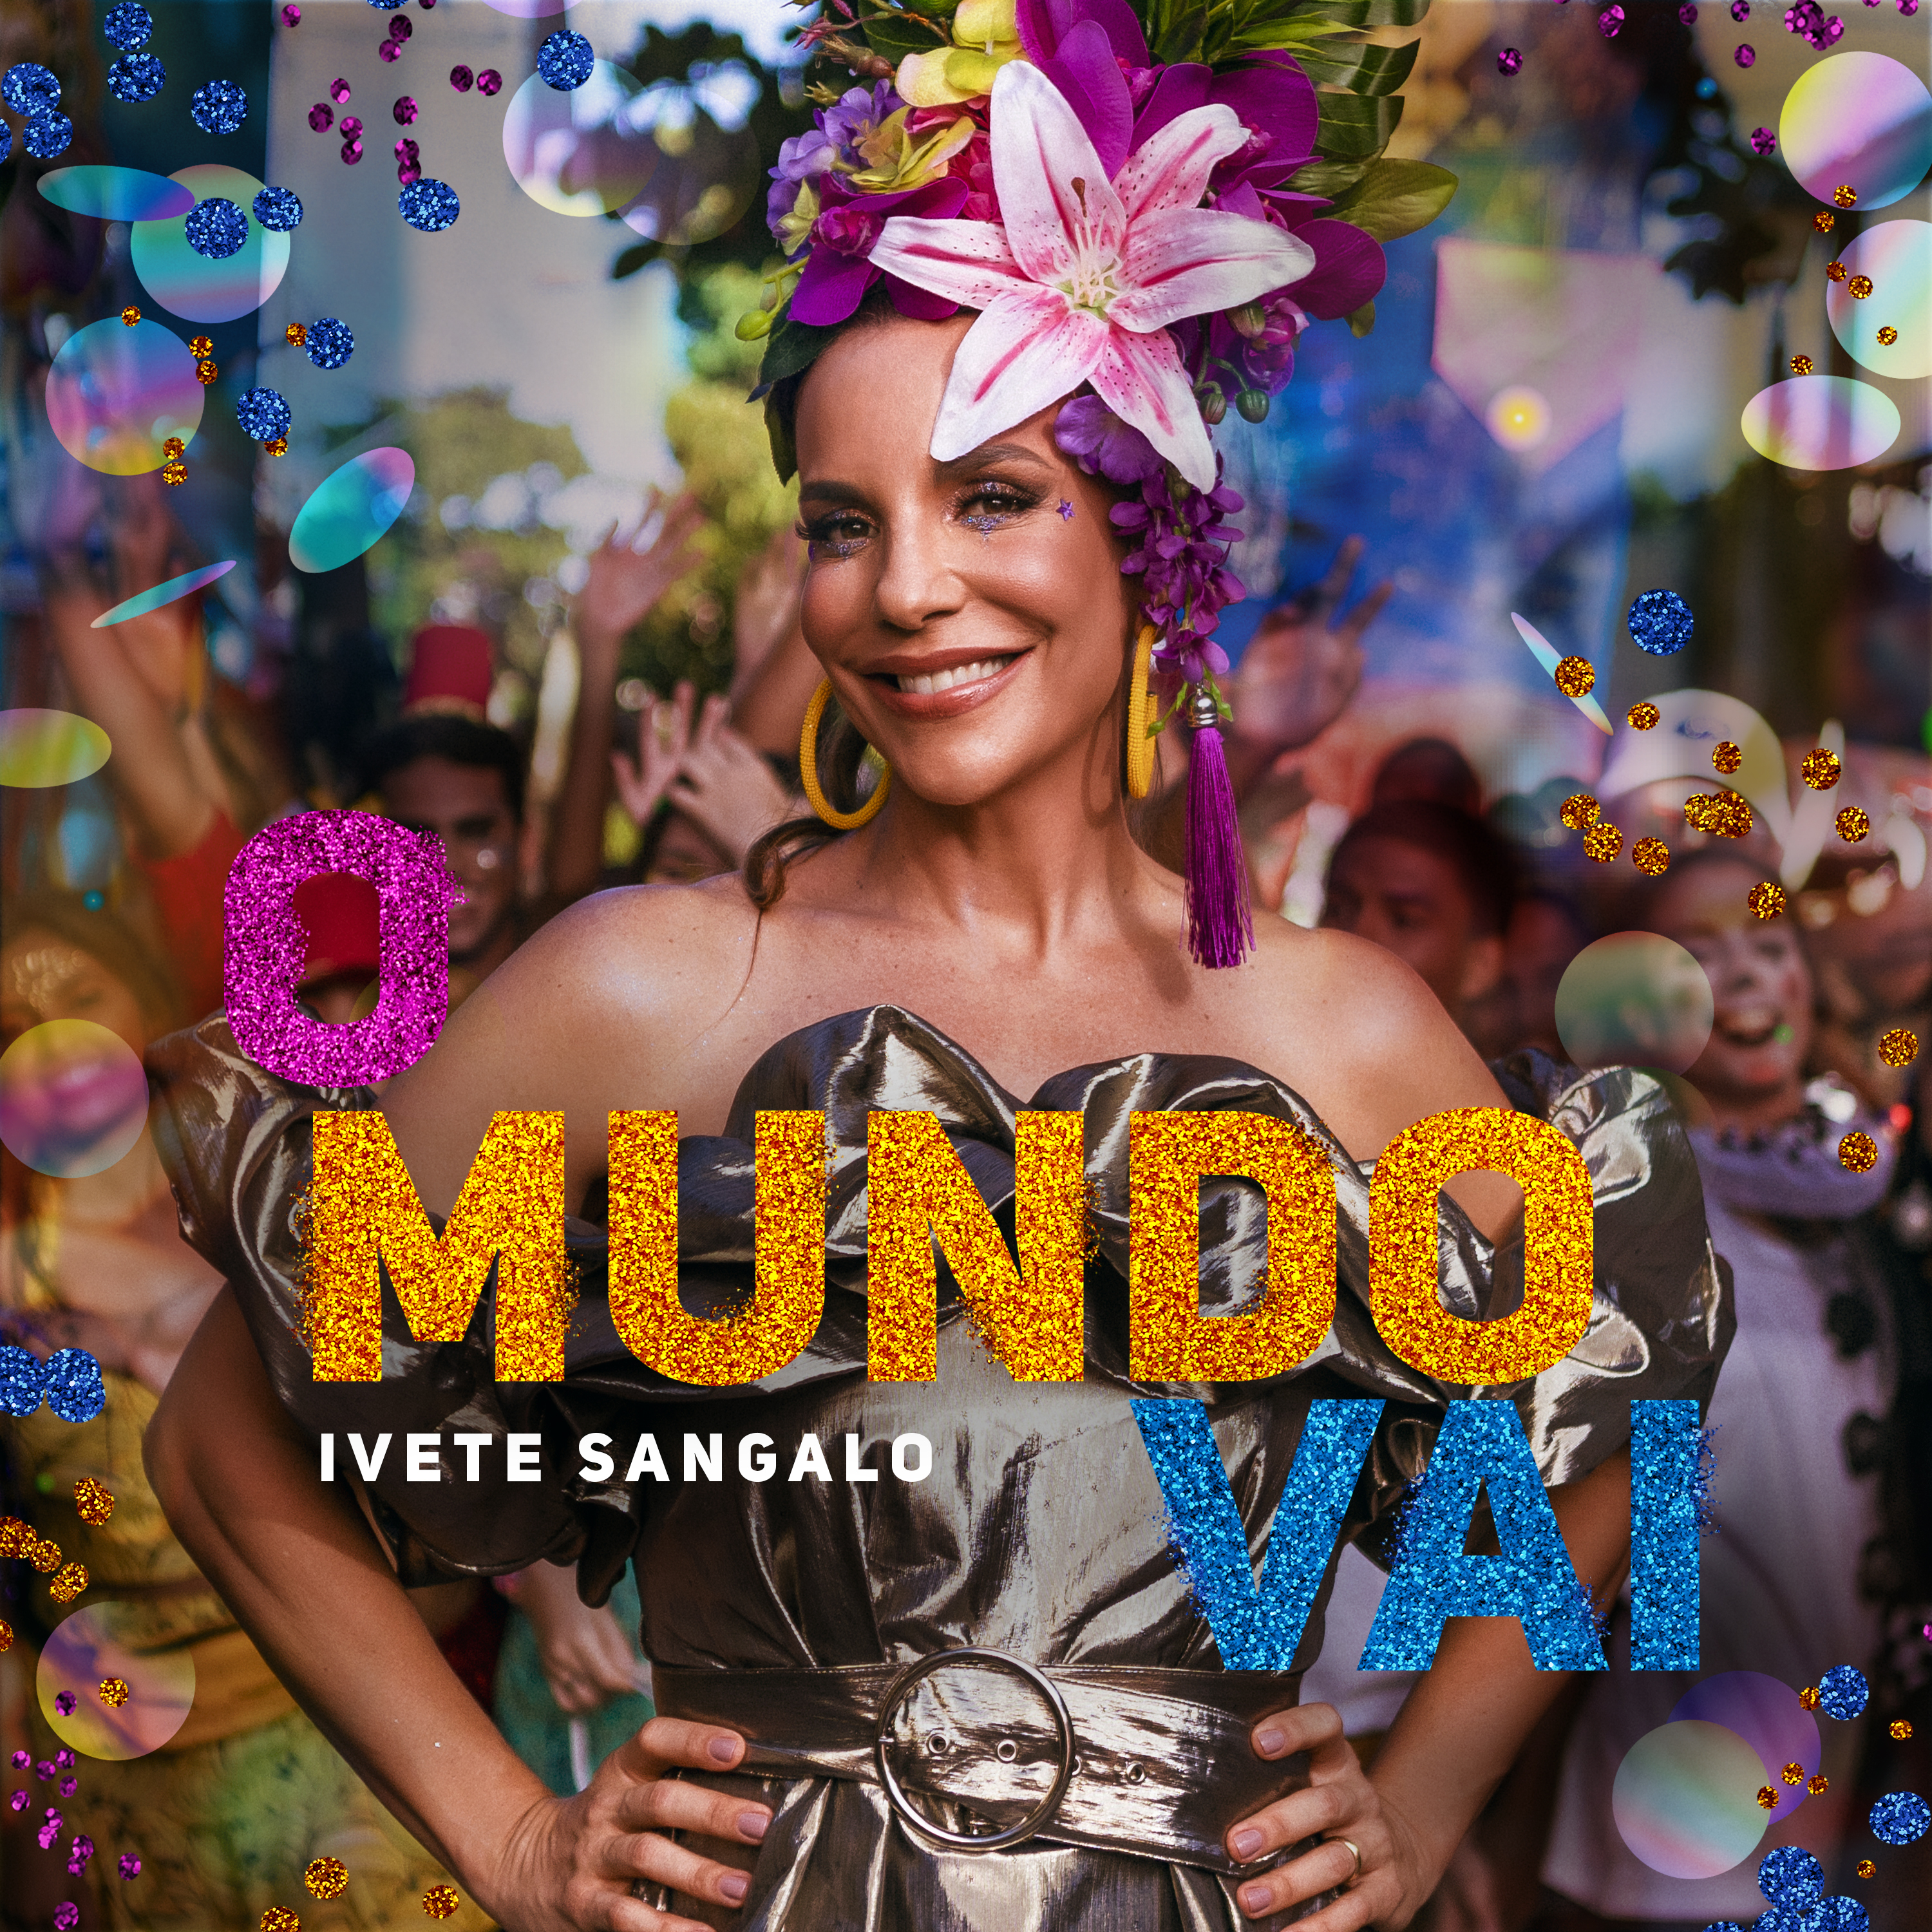 “O Mundo Vai” com Ivete Sangalo em seu novo EP e videoclipe